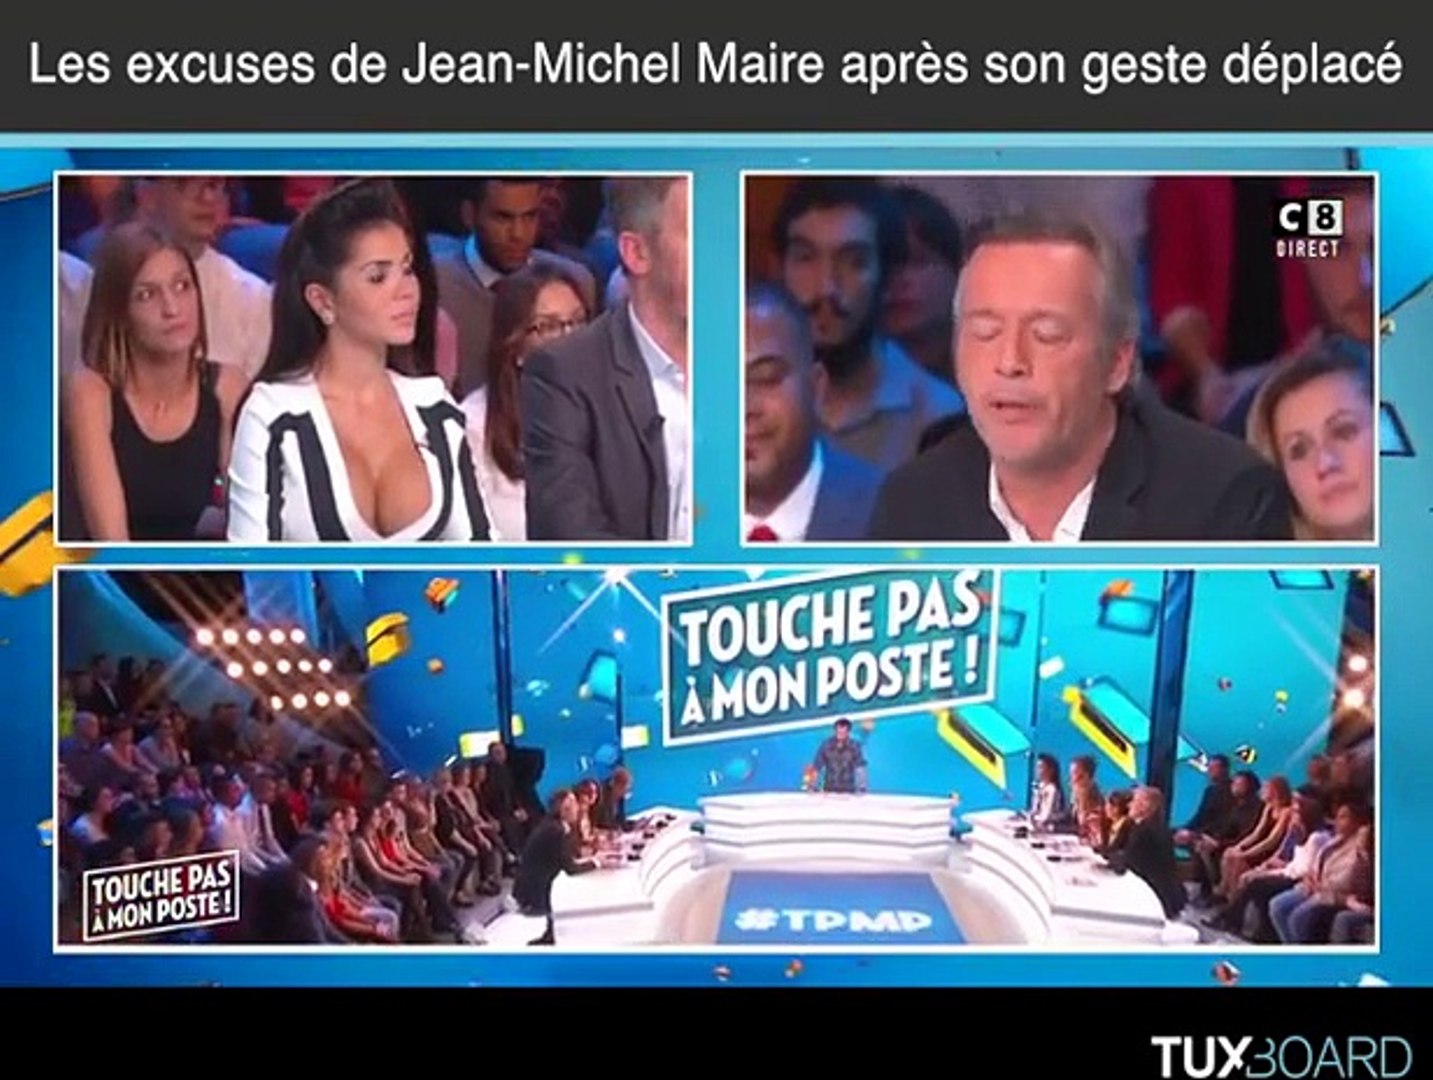 Jean-Michel Maire s'excuse après avoir embrassé la poitrine d'une femme  sans sa permission - Vidéo Dailymotion